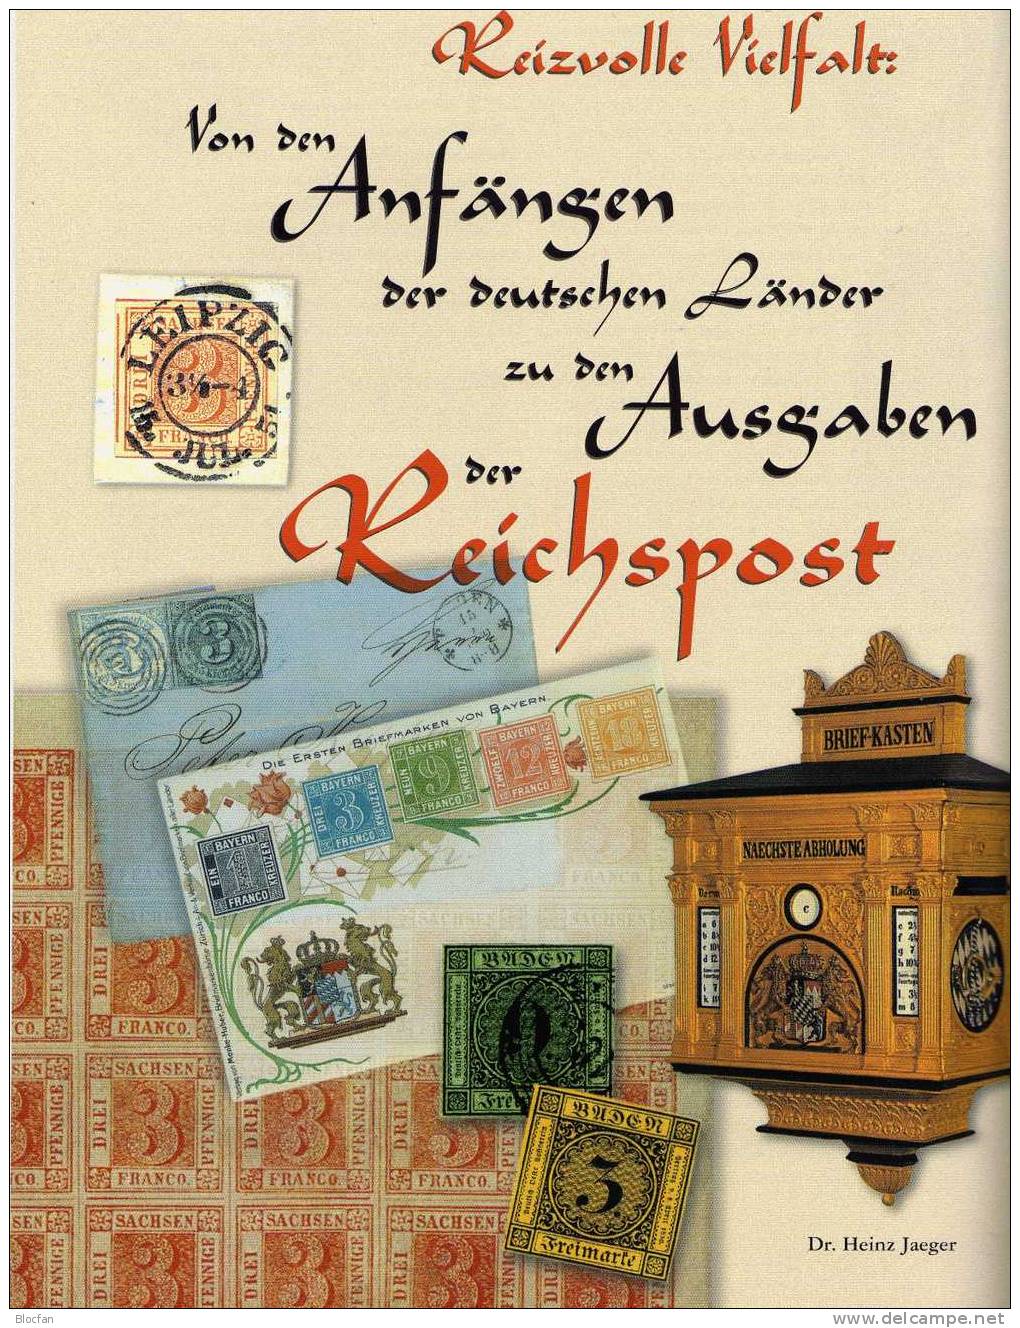 150 Jahre deutsche Briefmarken Deutschland 4 Souvenirdrucke 12€ zum Jubiläum 1998 from old Germany